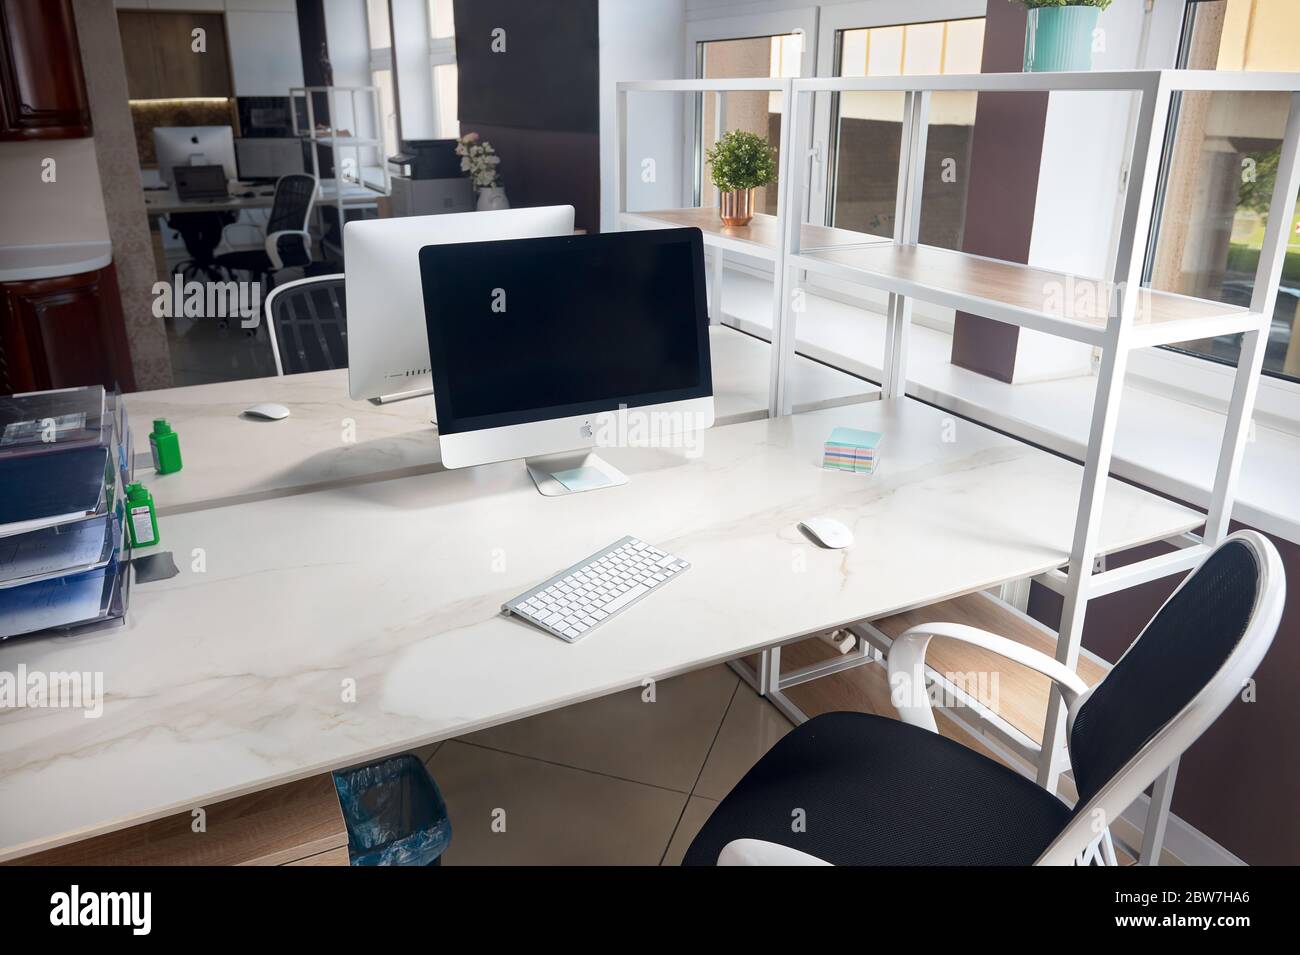 GRODNO, BIELORUSSIA - MAGGIO 2020: Due iMac Apple in un tavolo da ufficio con display vuoti con piano in gres, moderno luogo di lavoro di ufficio alla moda in loft sty Foto Stock